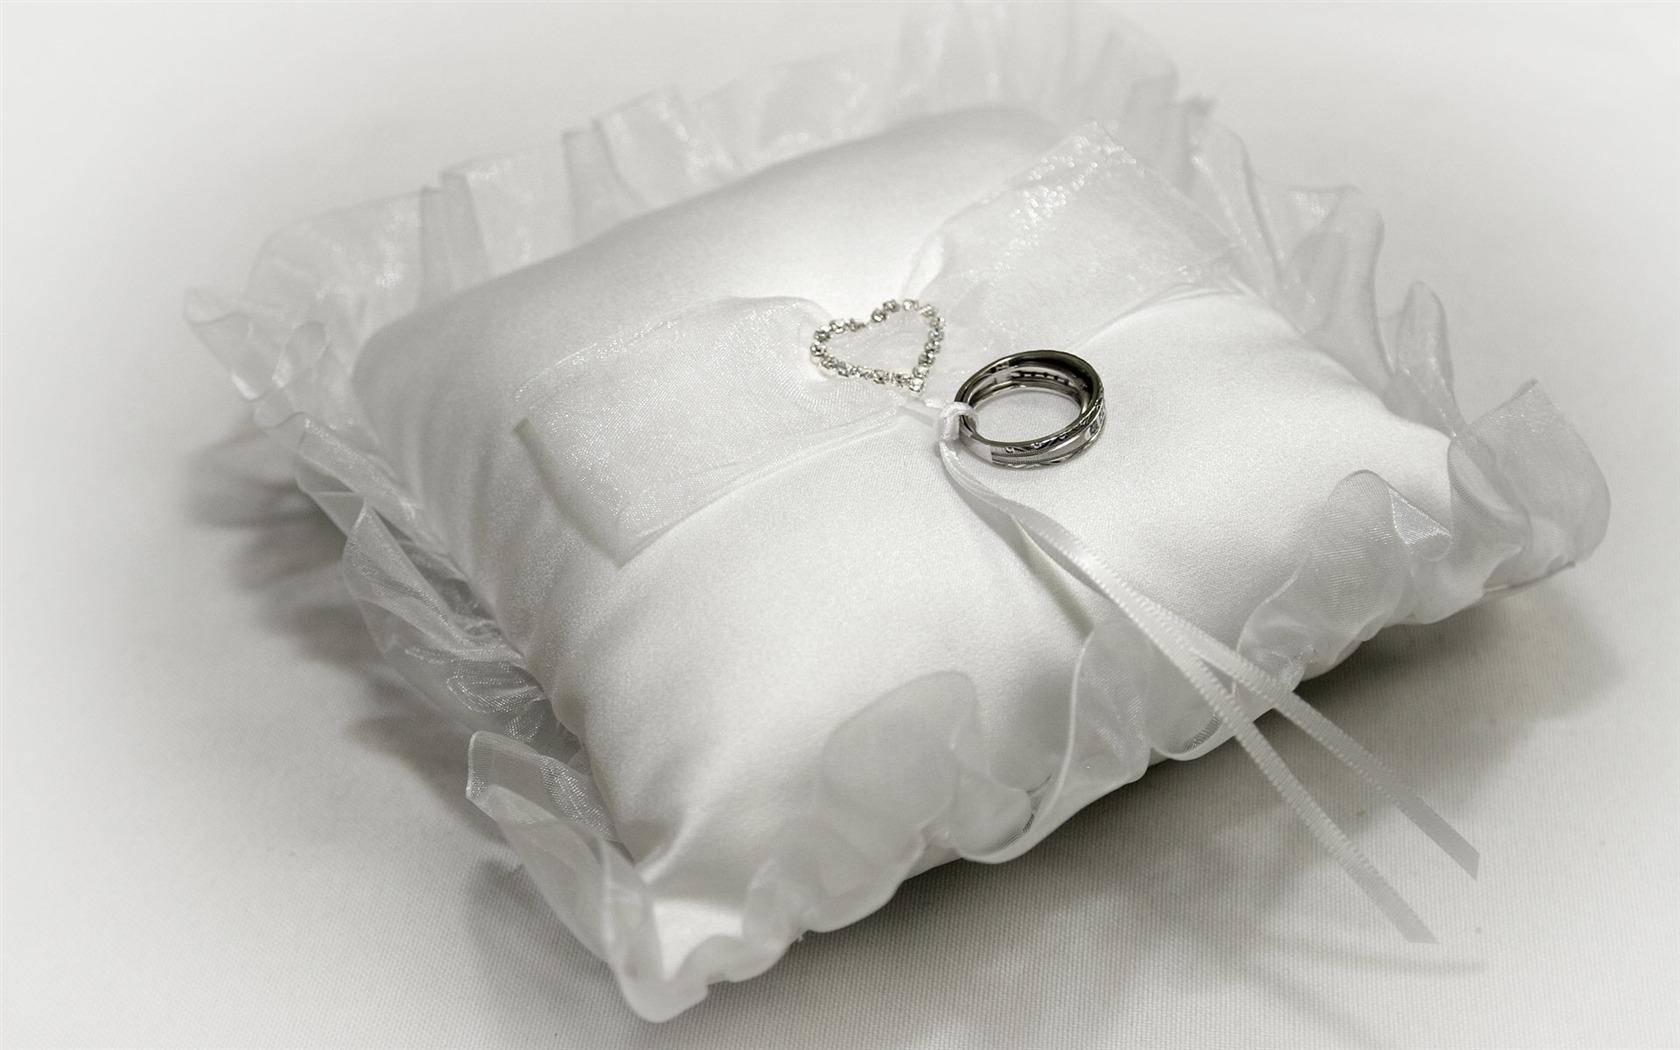 Mariage et papier peint anneau de mariage (1) #10 - 1680x1050